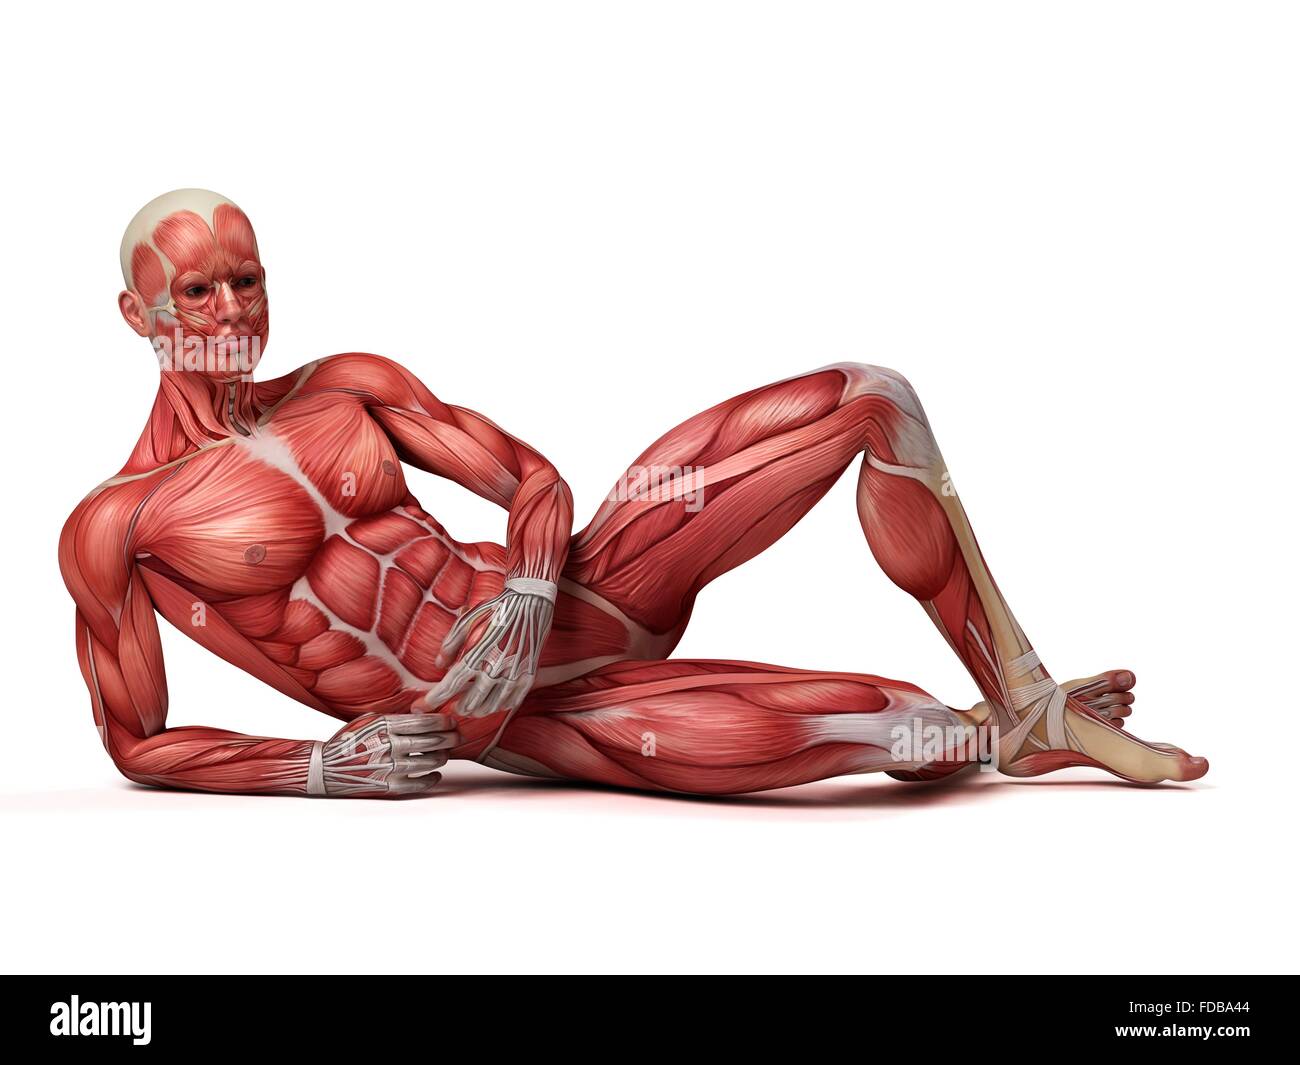 Système musculaire d'un homme couché, illustration. Banque D'Images